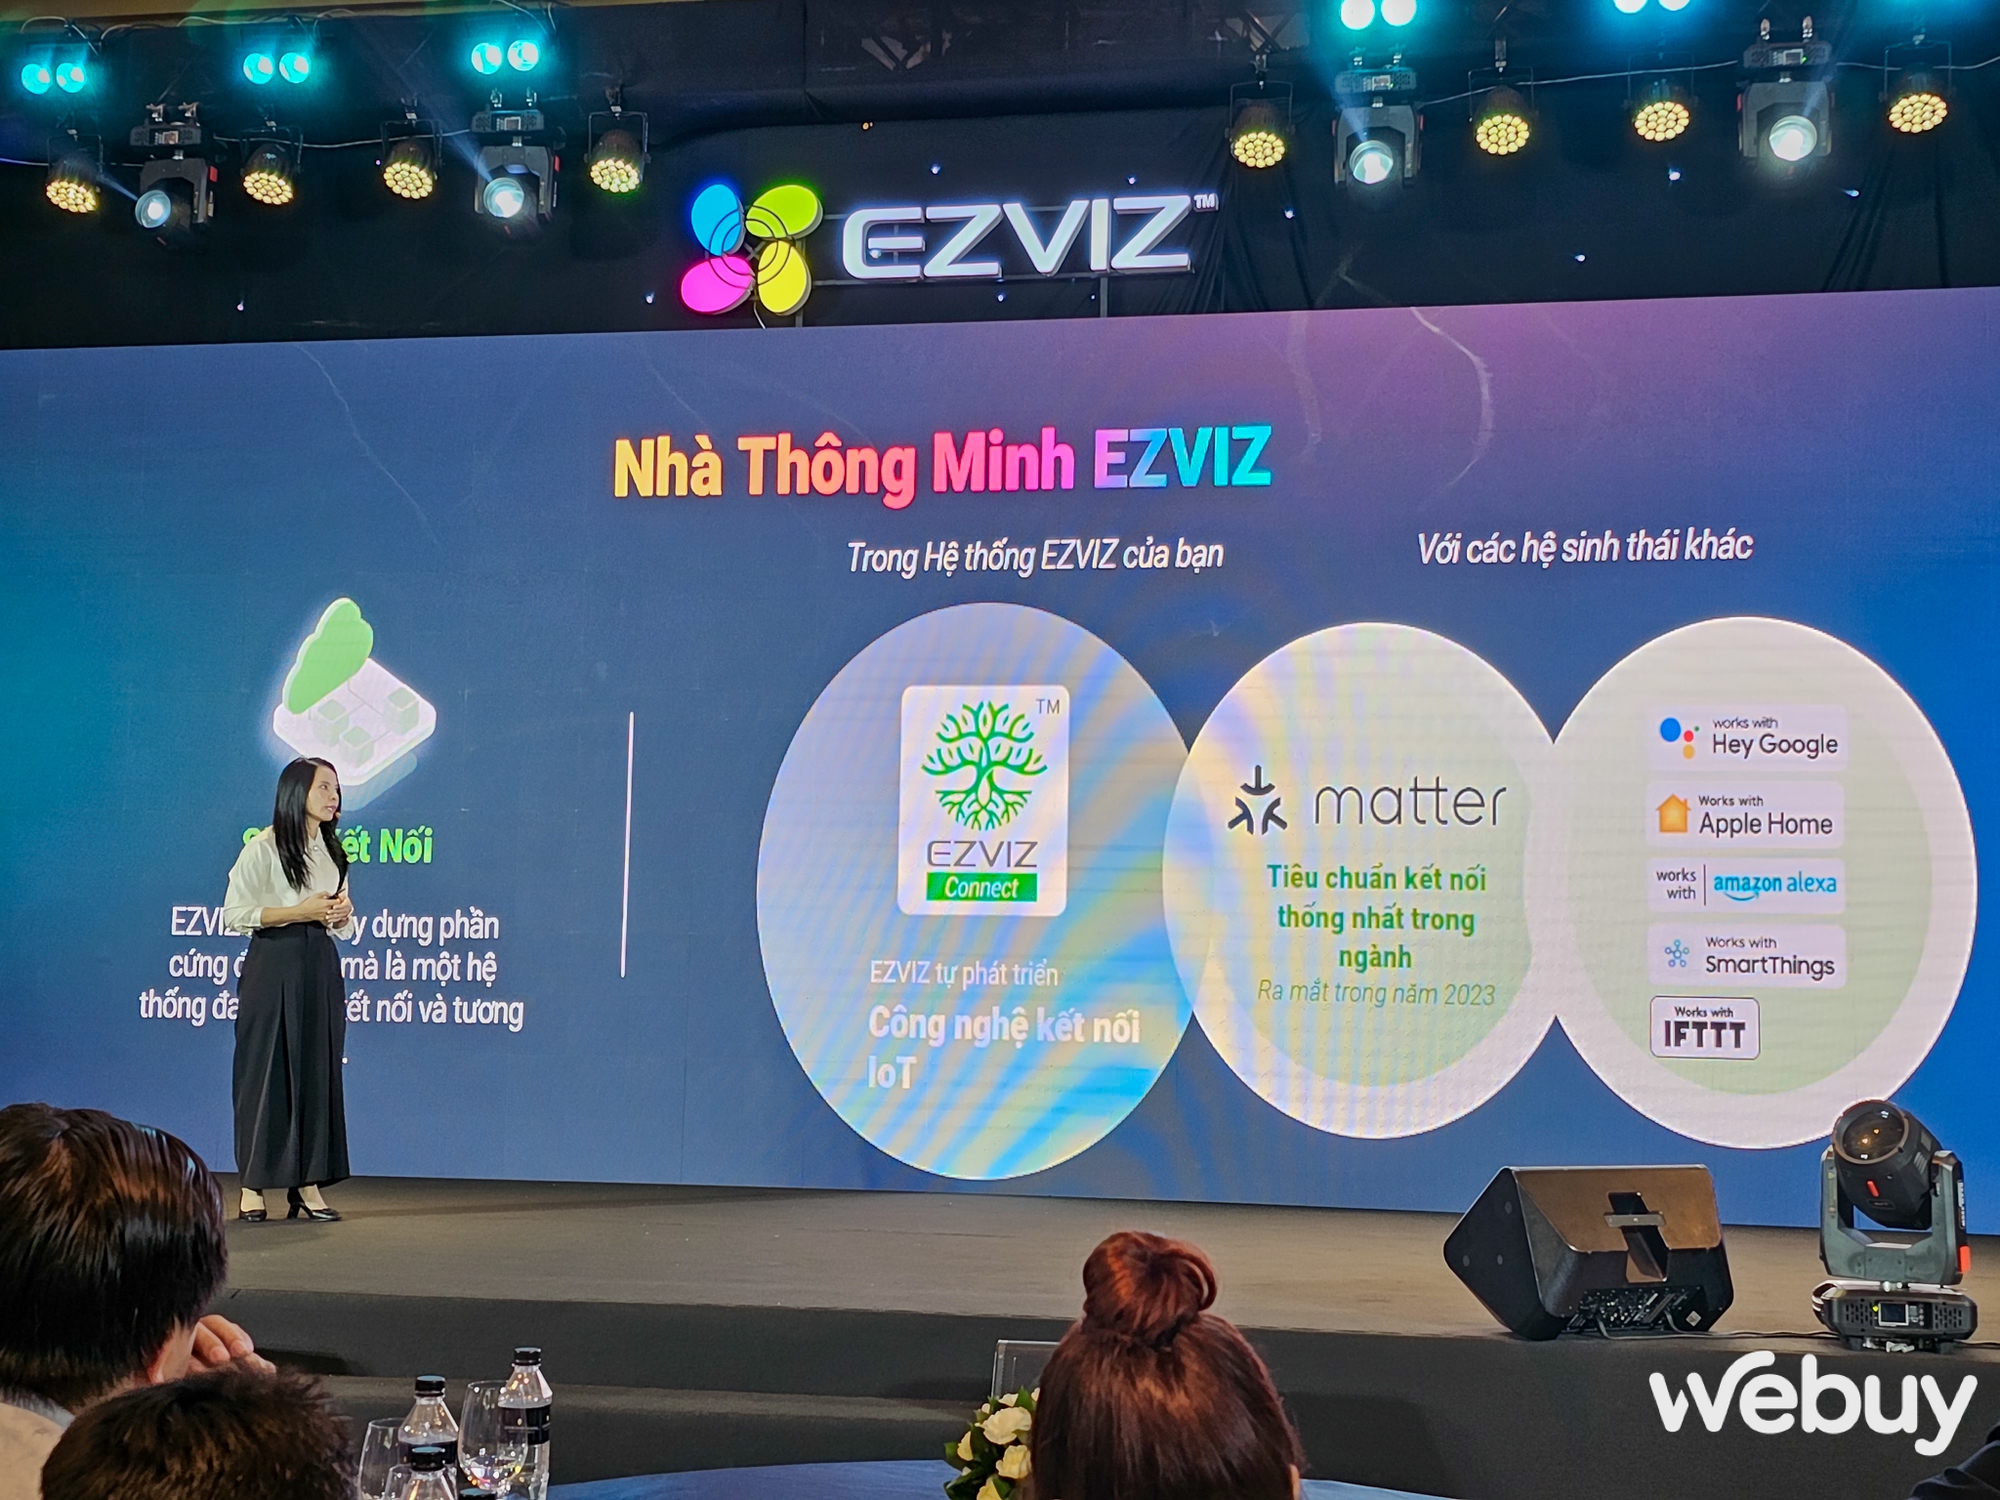 EZVIZ ra mắt loạt sản phẩm mới: Camera giám sát tích hợp 4G, Robot hút bụi tự động, cây lau nhà thông minh cùng nhiều thiết bị quản lý Smarthome khác - Ảnh 2.